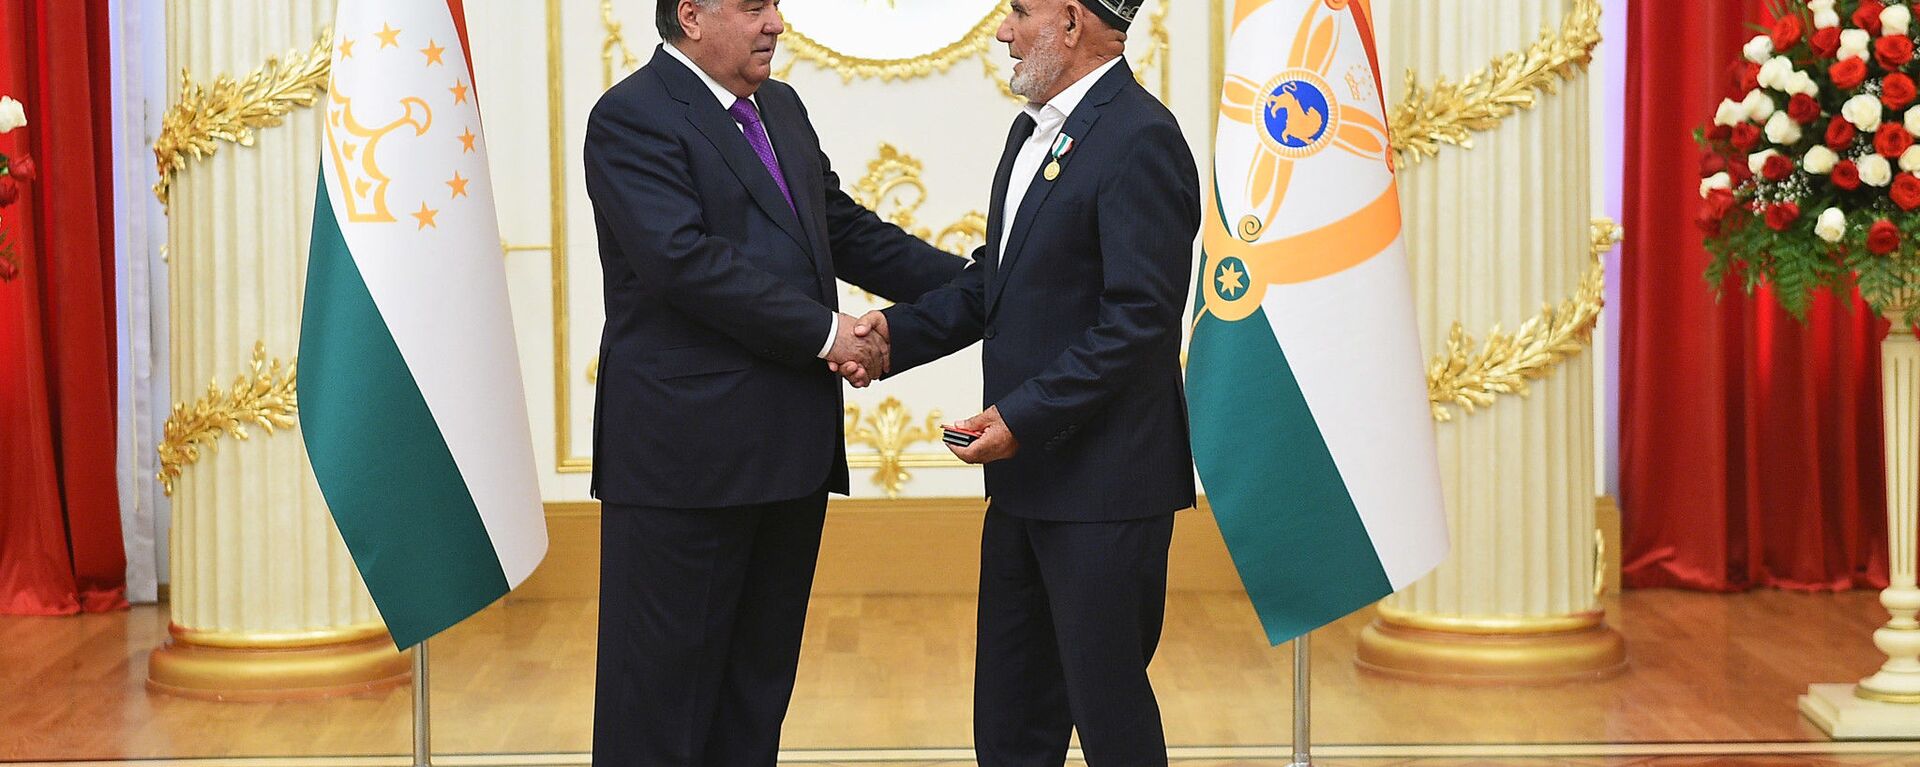 Президент Таджикистана Эмомали Рахмон во время церемонии награждения бизнесмена Мухиба Бободжонова - Sputnik Тоҷикистон, 1920, 04.06.2020